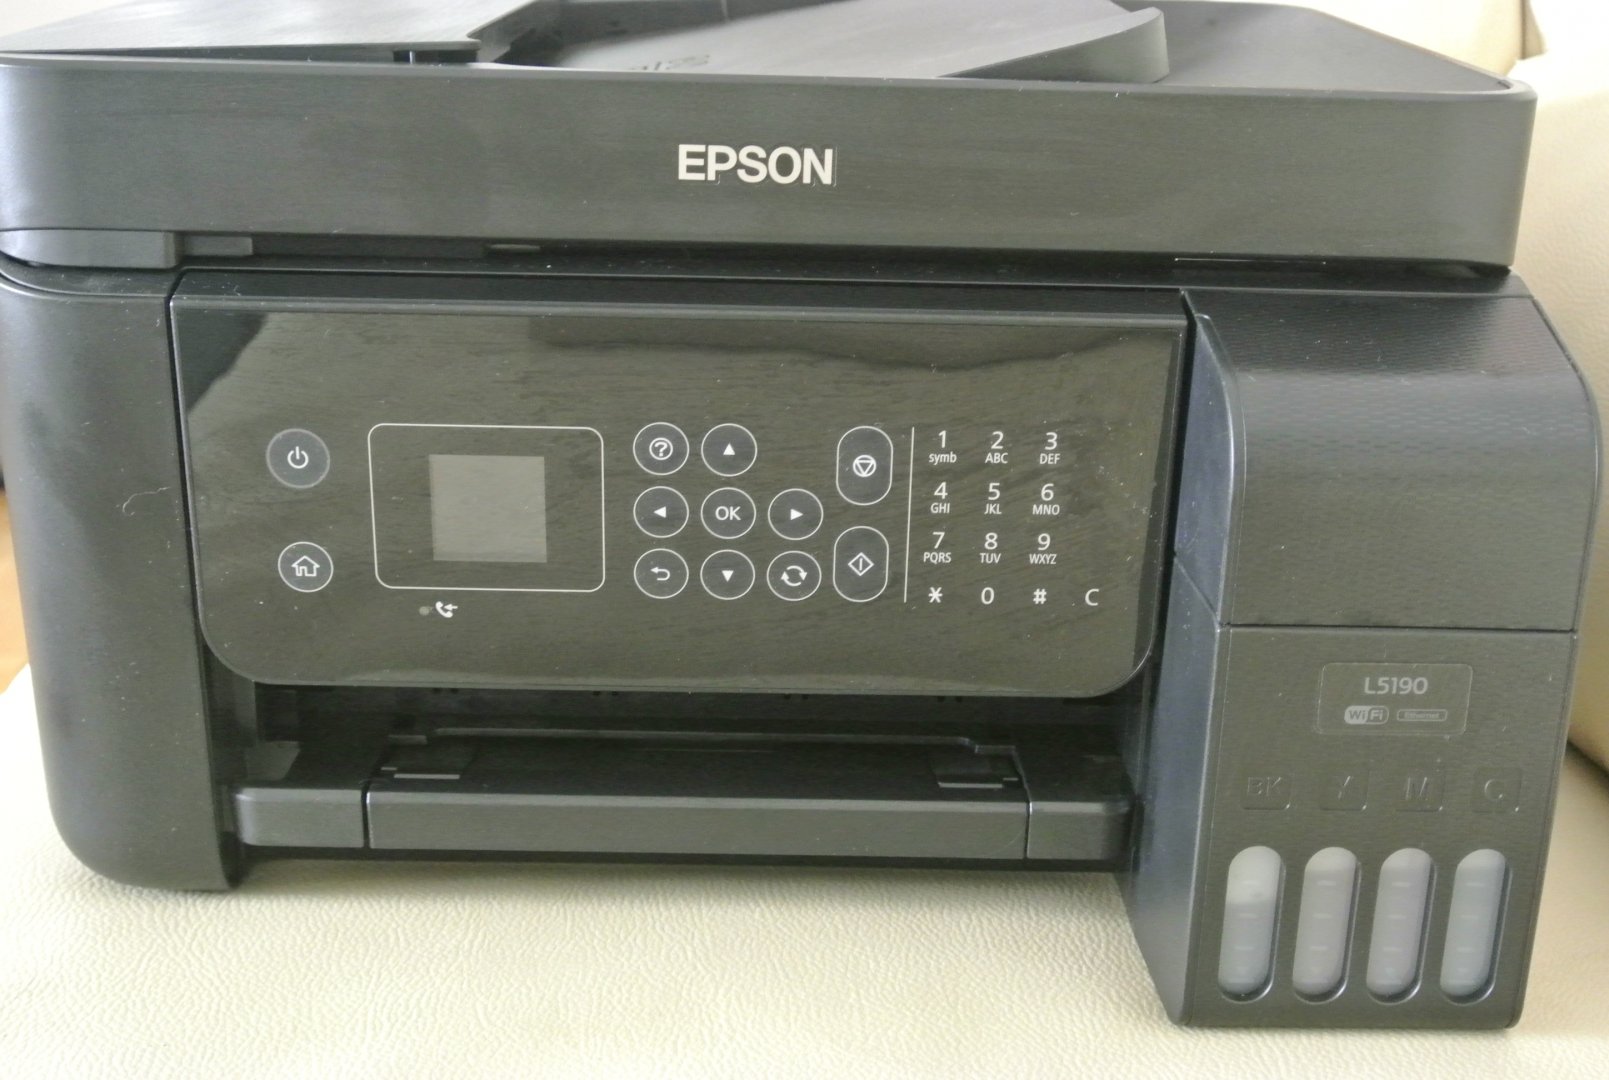 Epson Ecotank L5190 Inkjet All In One Printer Avsite 4287